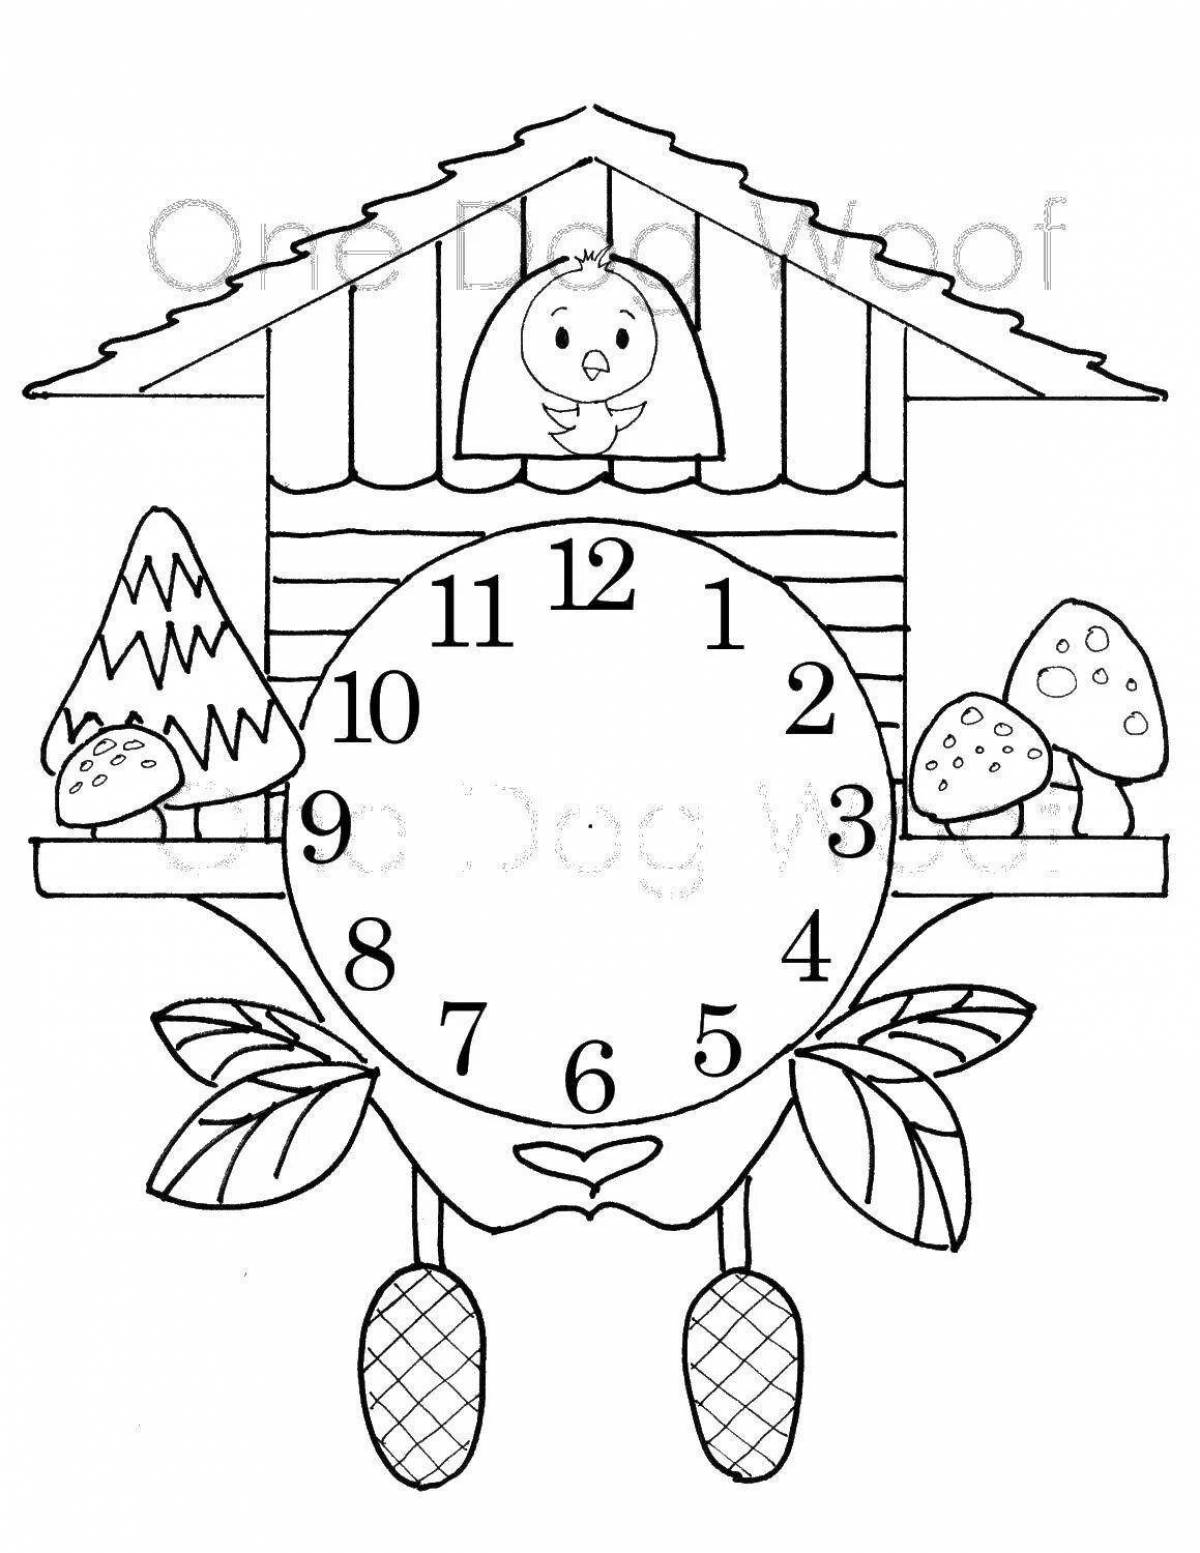 Coloring page happy cuckoo clock